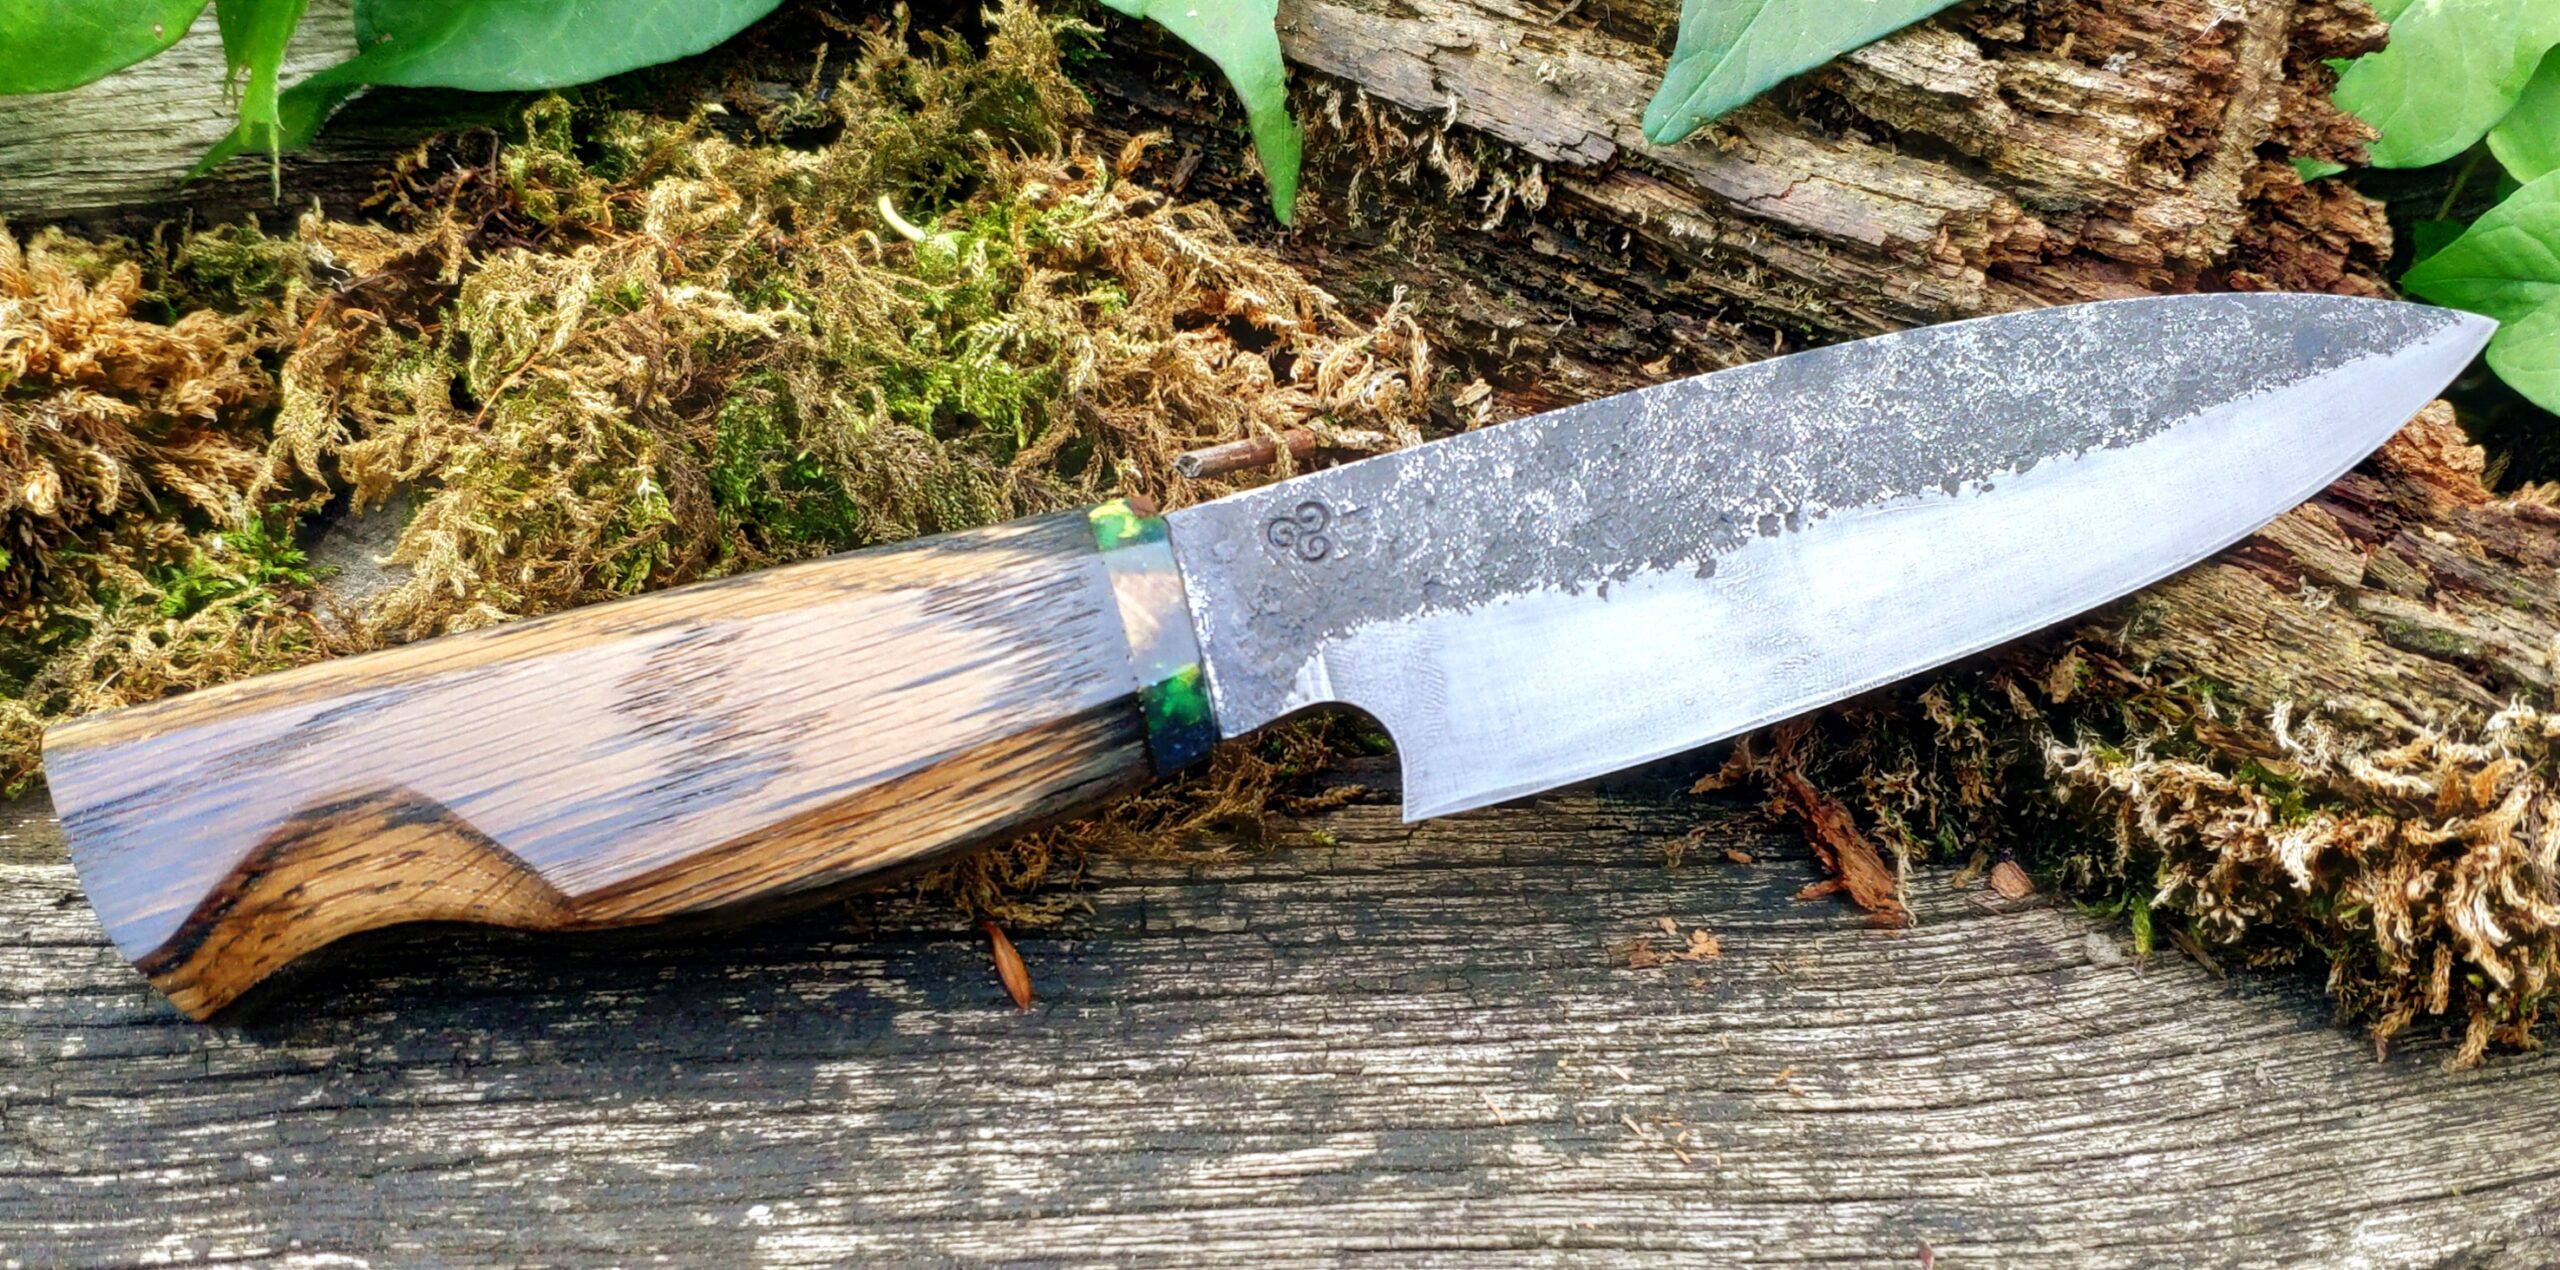 Handmade Repurposed File Knives